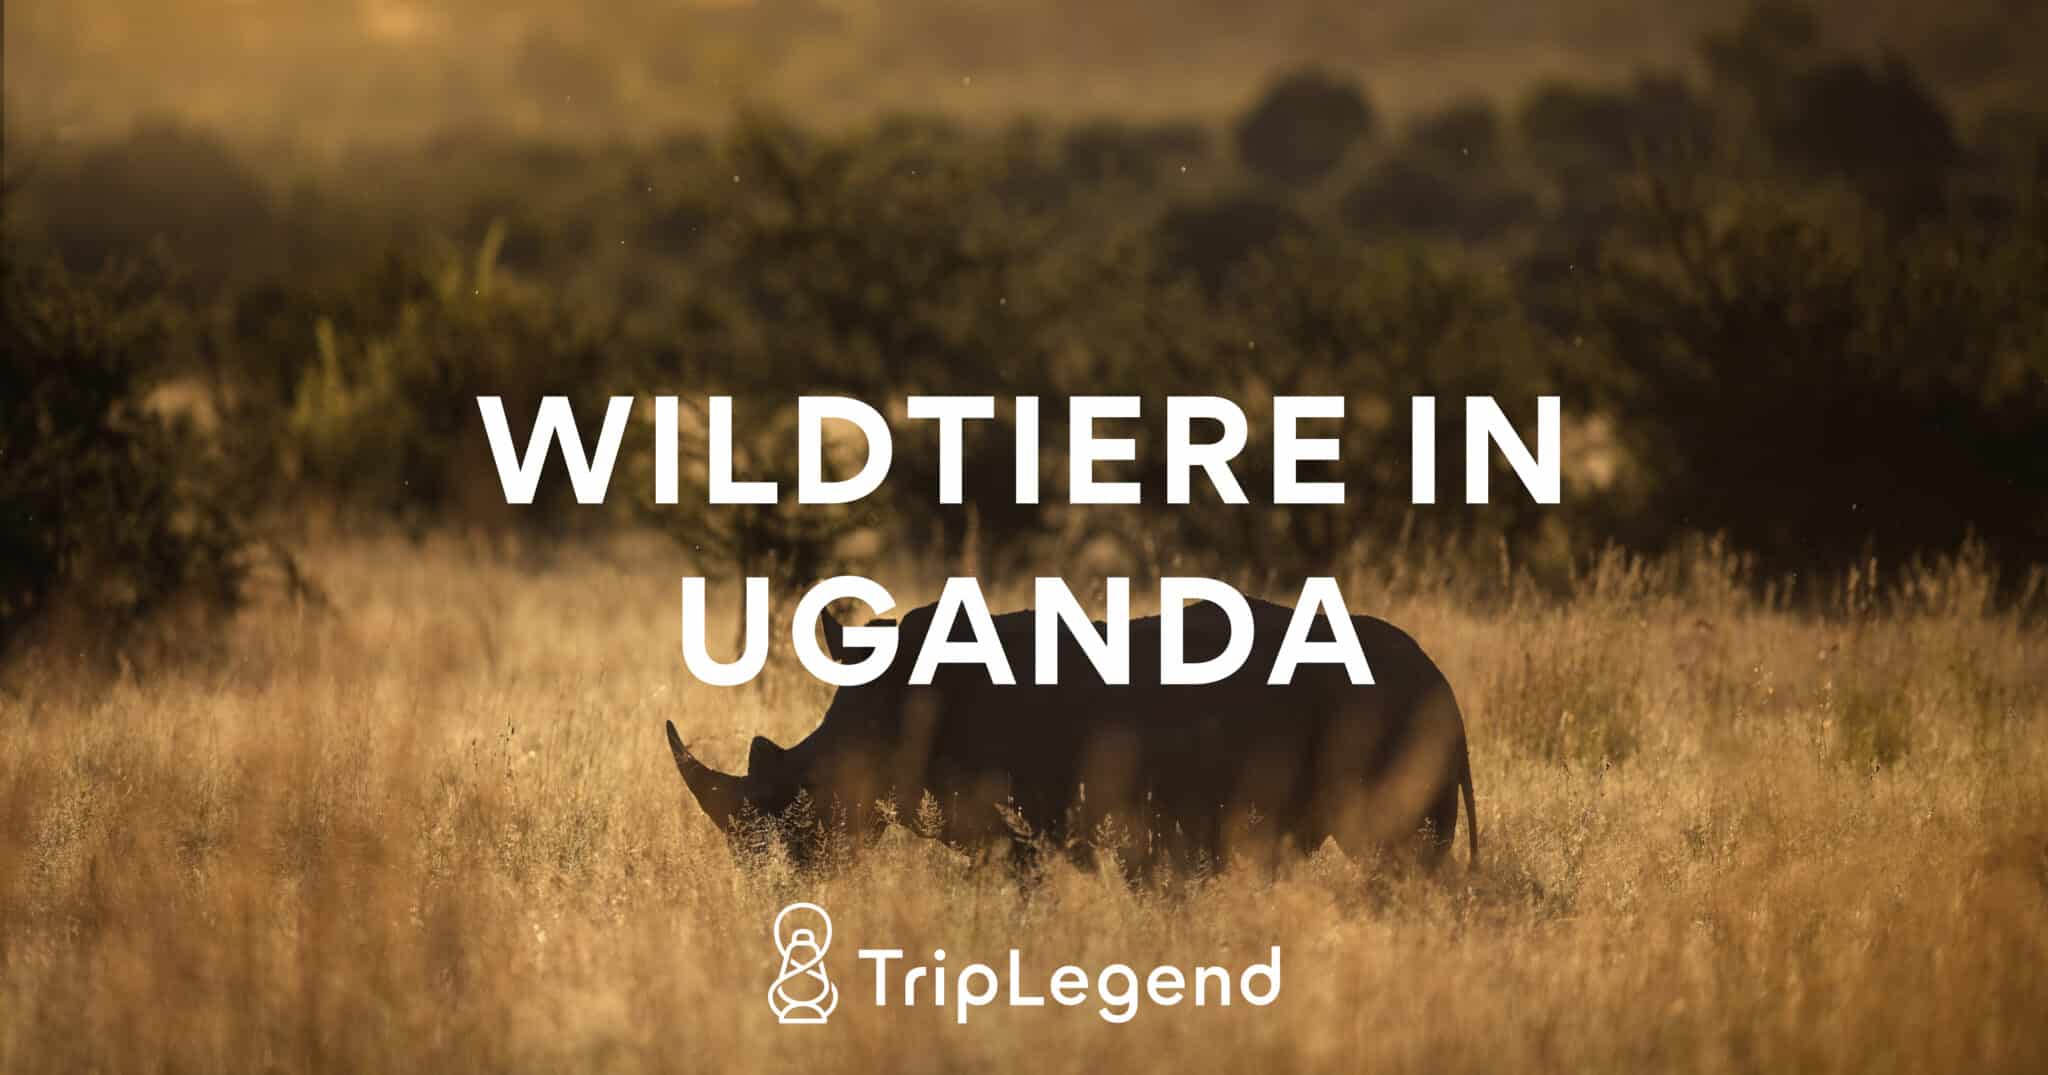 Bidragande bild till artikeln om vilda djur i Uganda